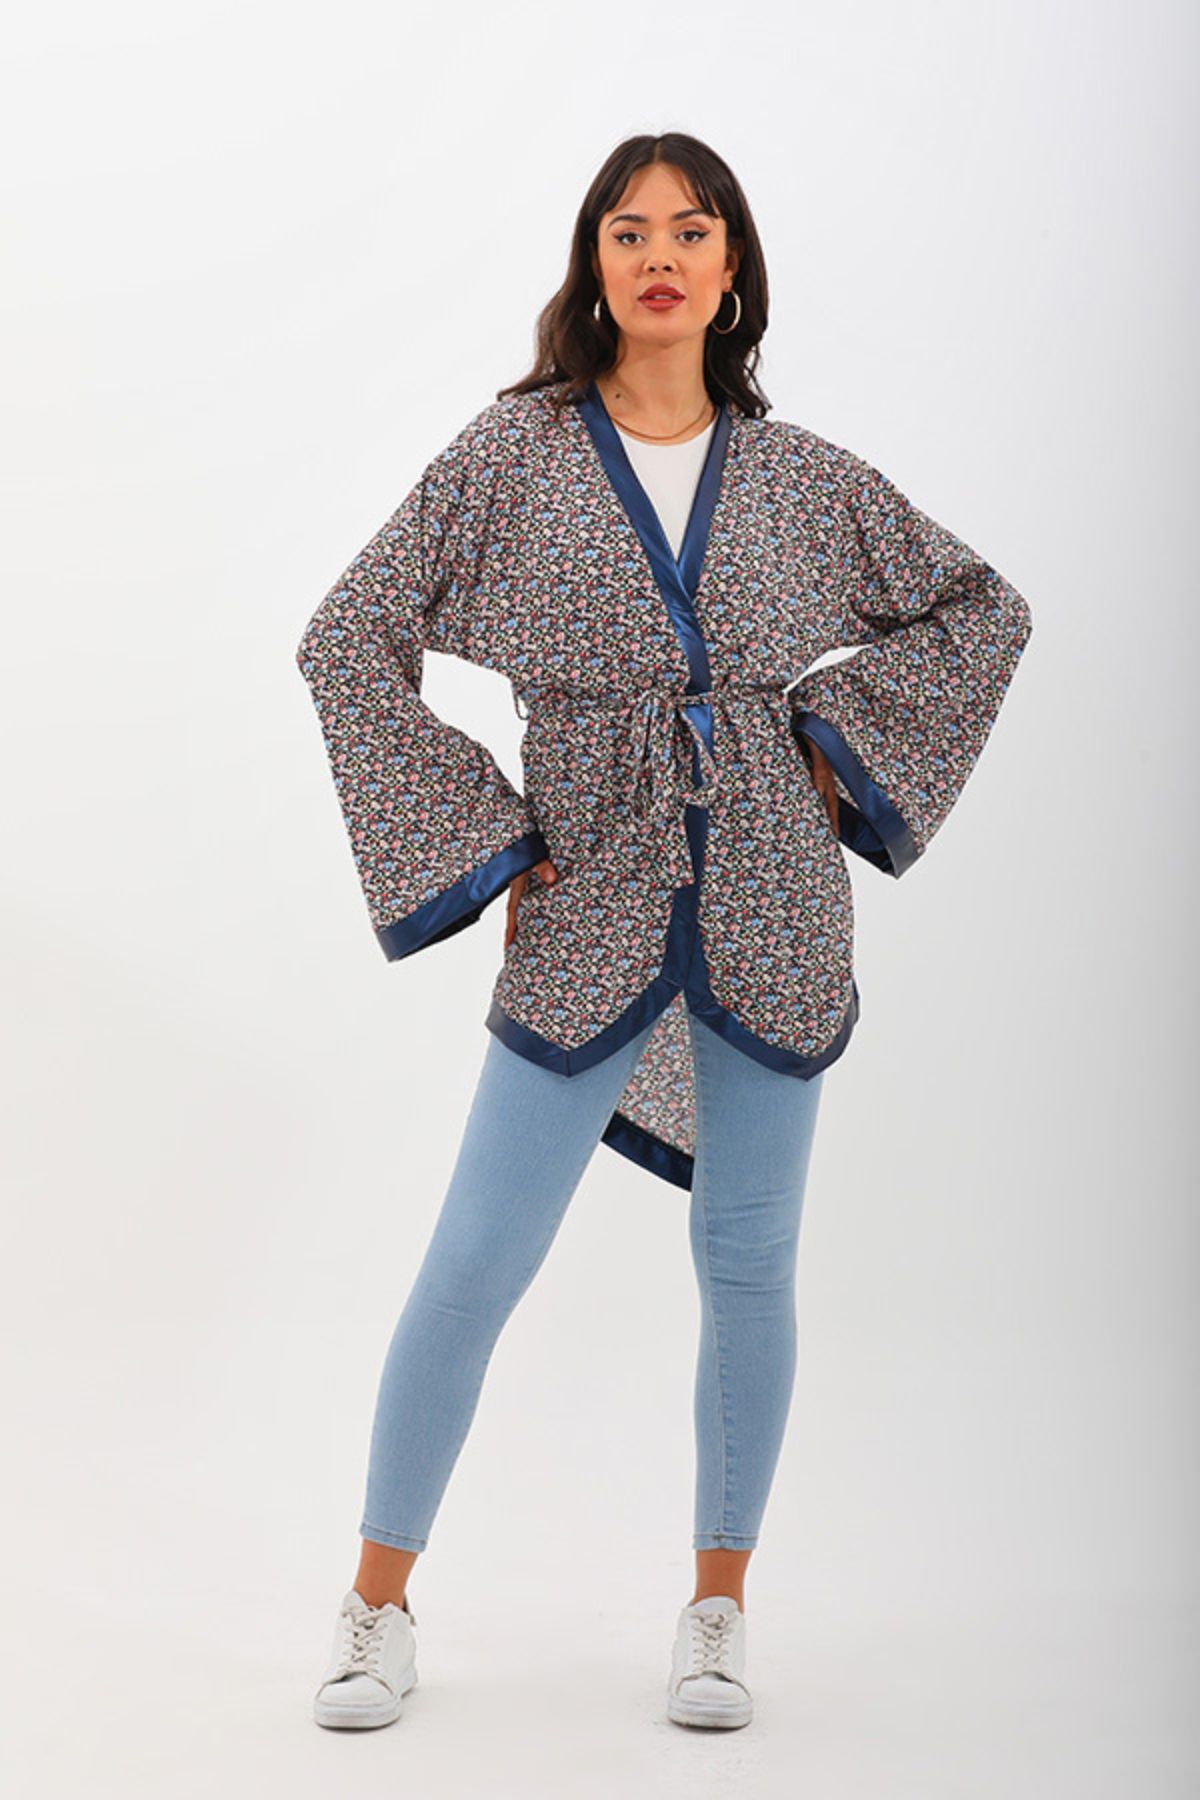 marecaldo Yazlık Kadın Giyim Modası Avangart Kimono Modeli Eleganza Çiçekli Desen